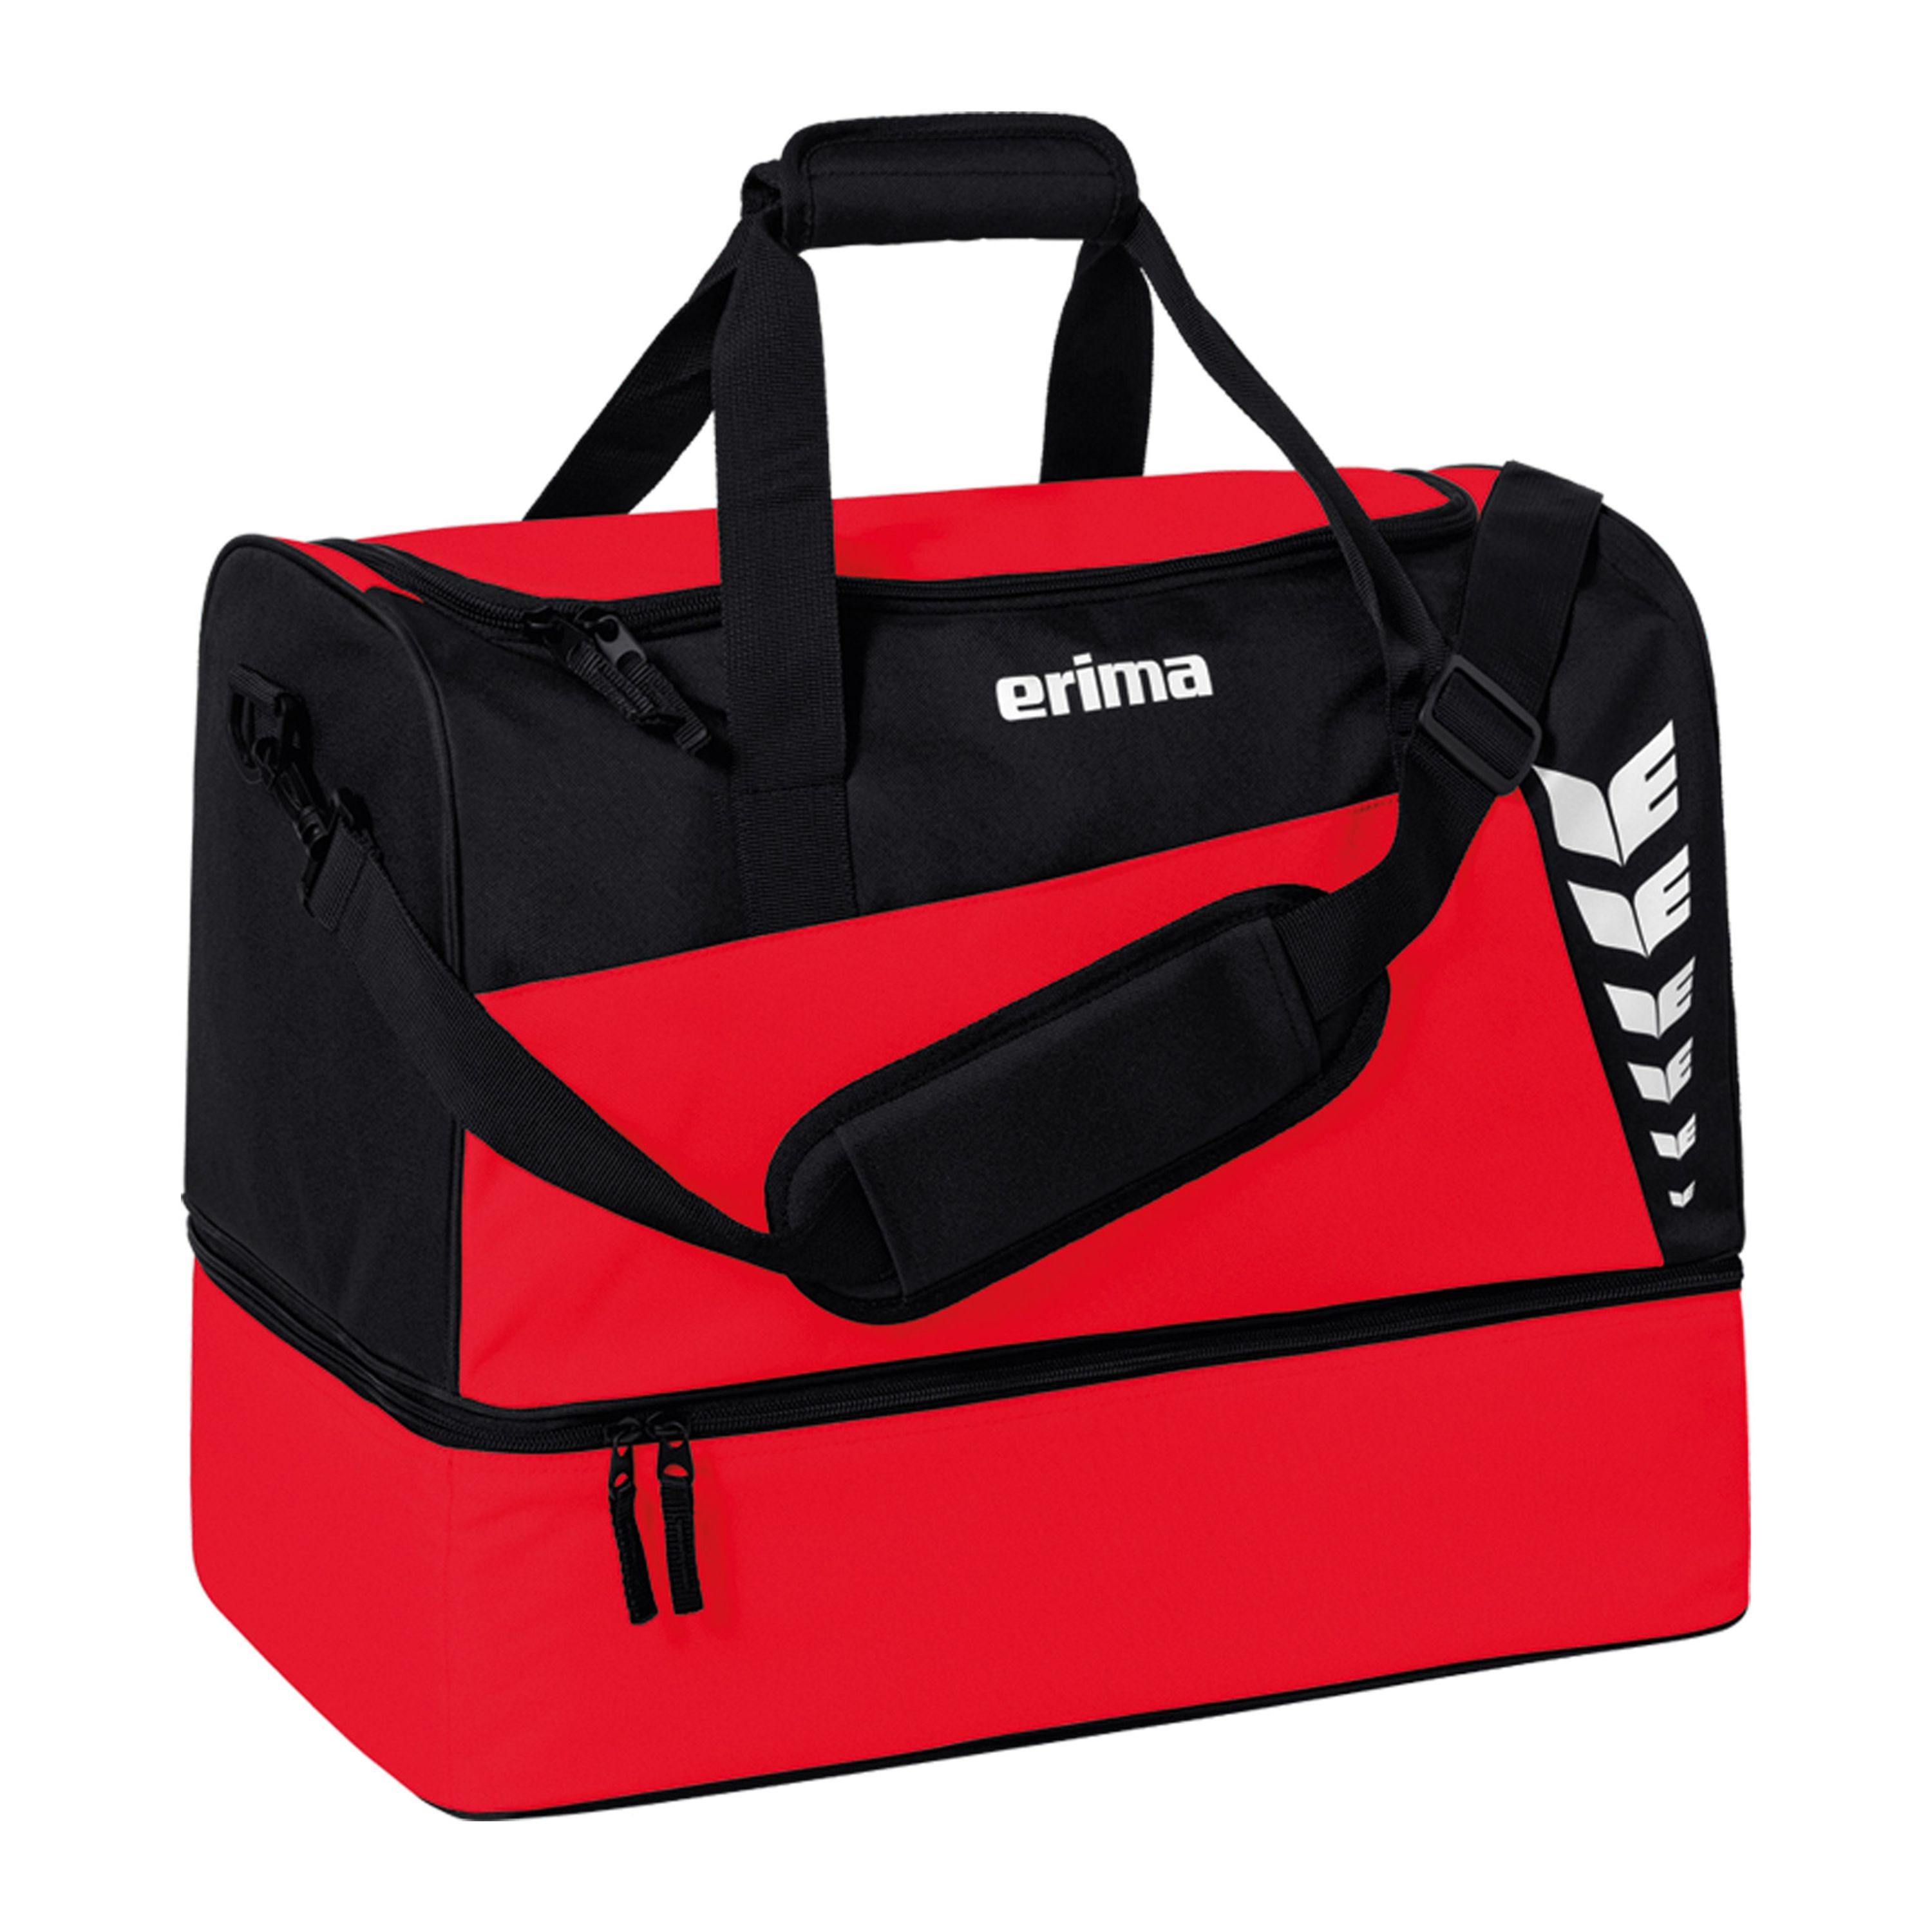 erima Six Wings Sporttasche mit Bodenfach rot/schwarz S